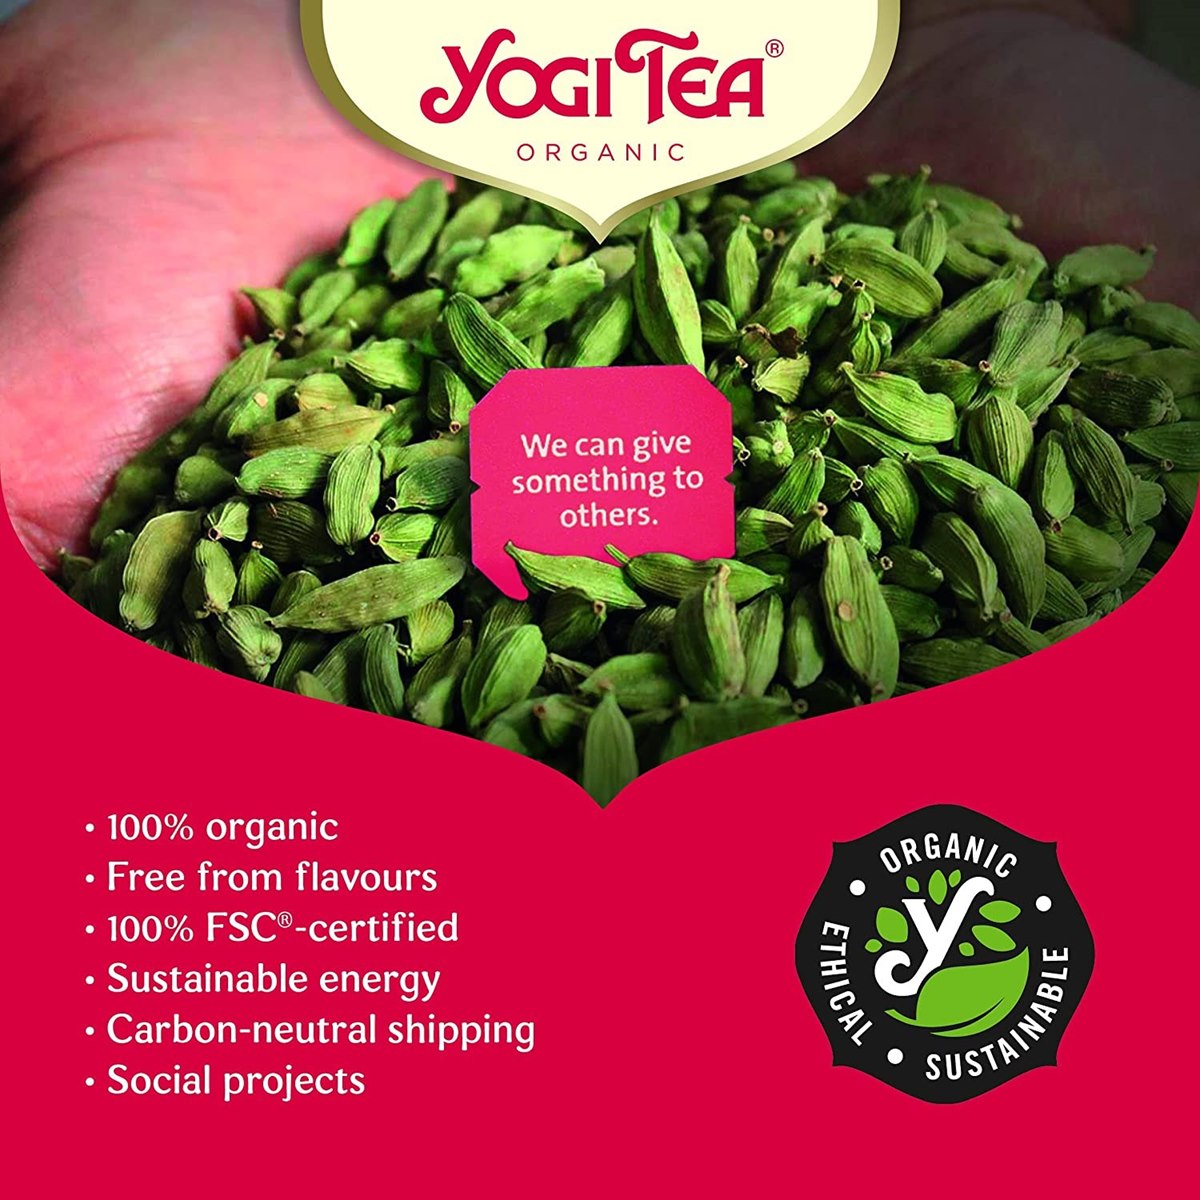 Where to Buy Yogi Organic Tea